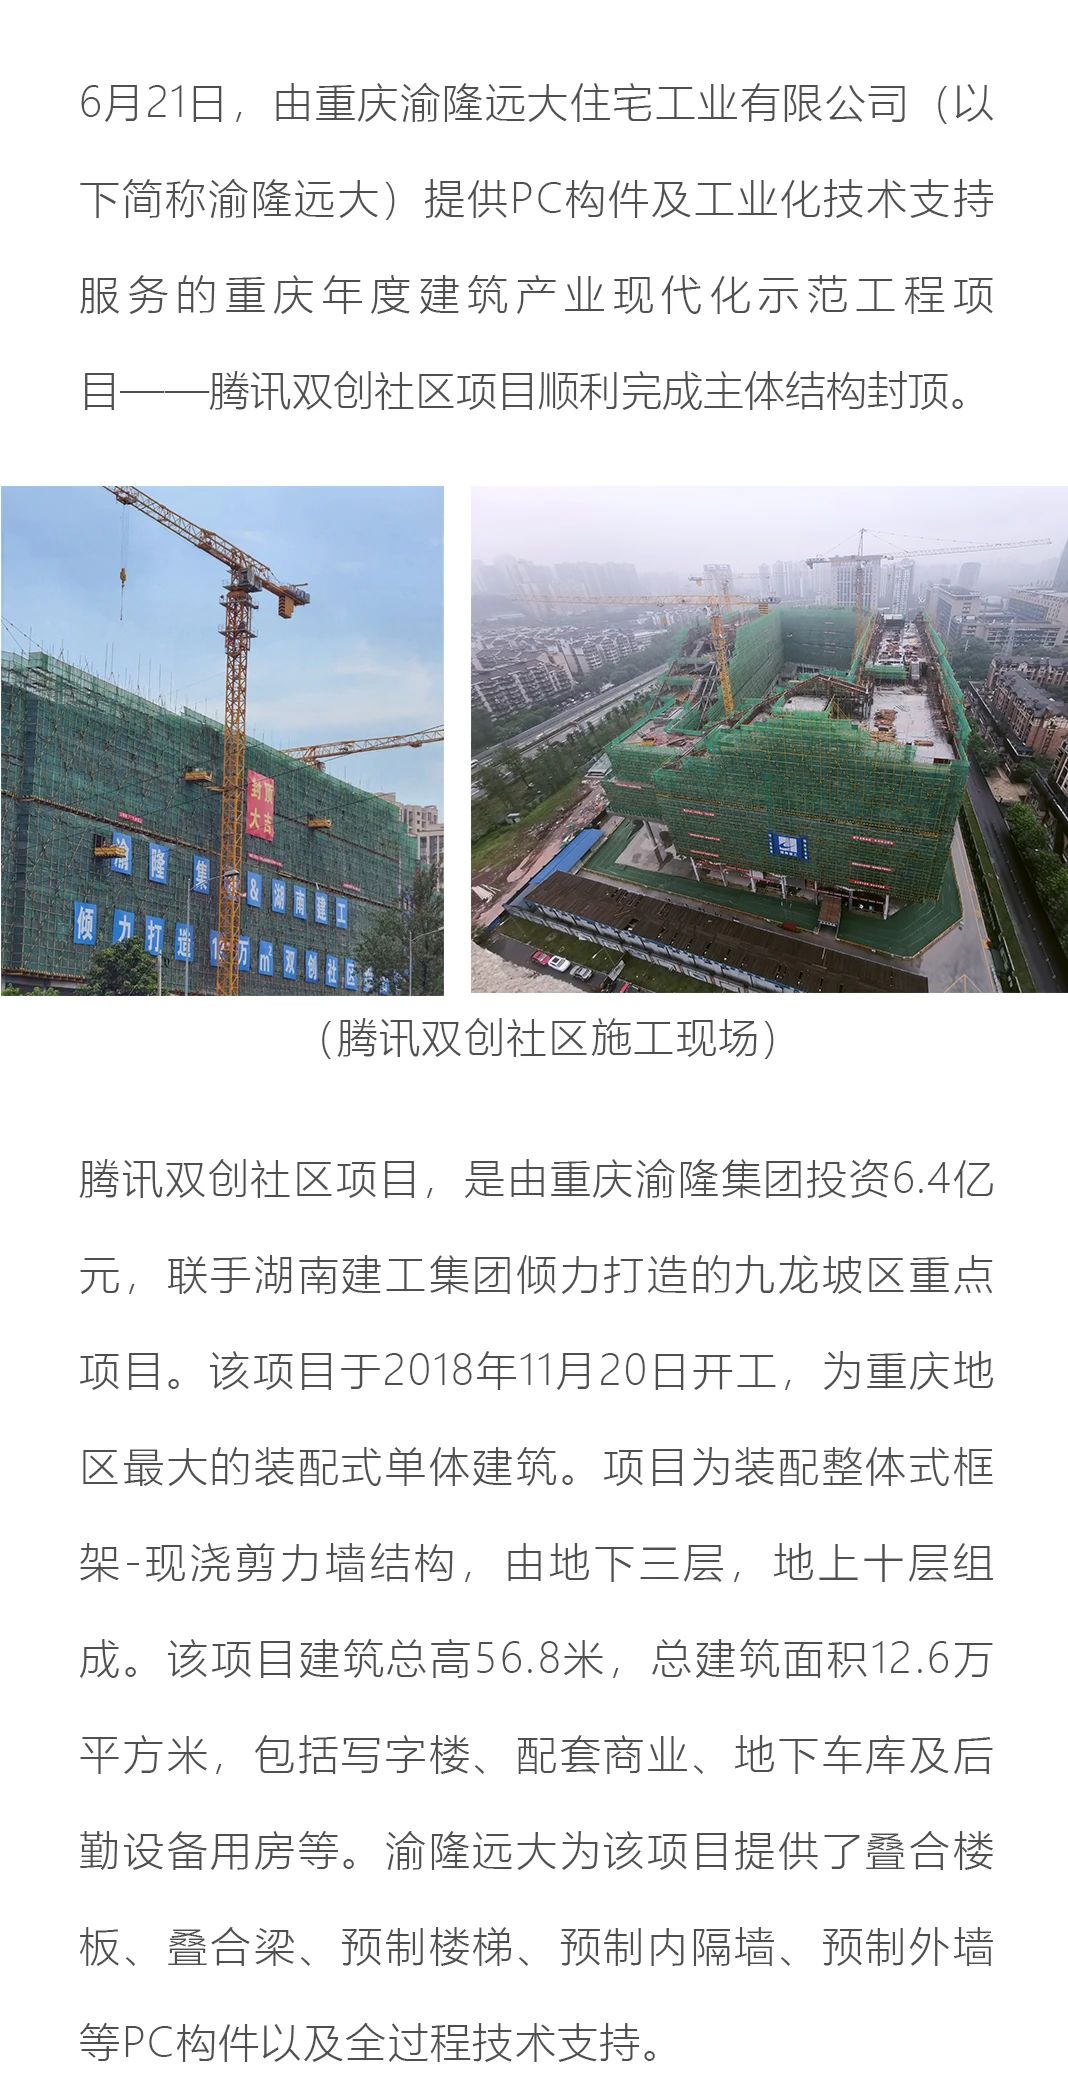 重庆年度建筑产业化示范工程 腾讯双创社区项目主体结构顺利封顶